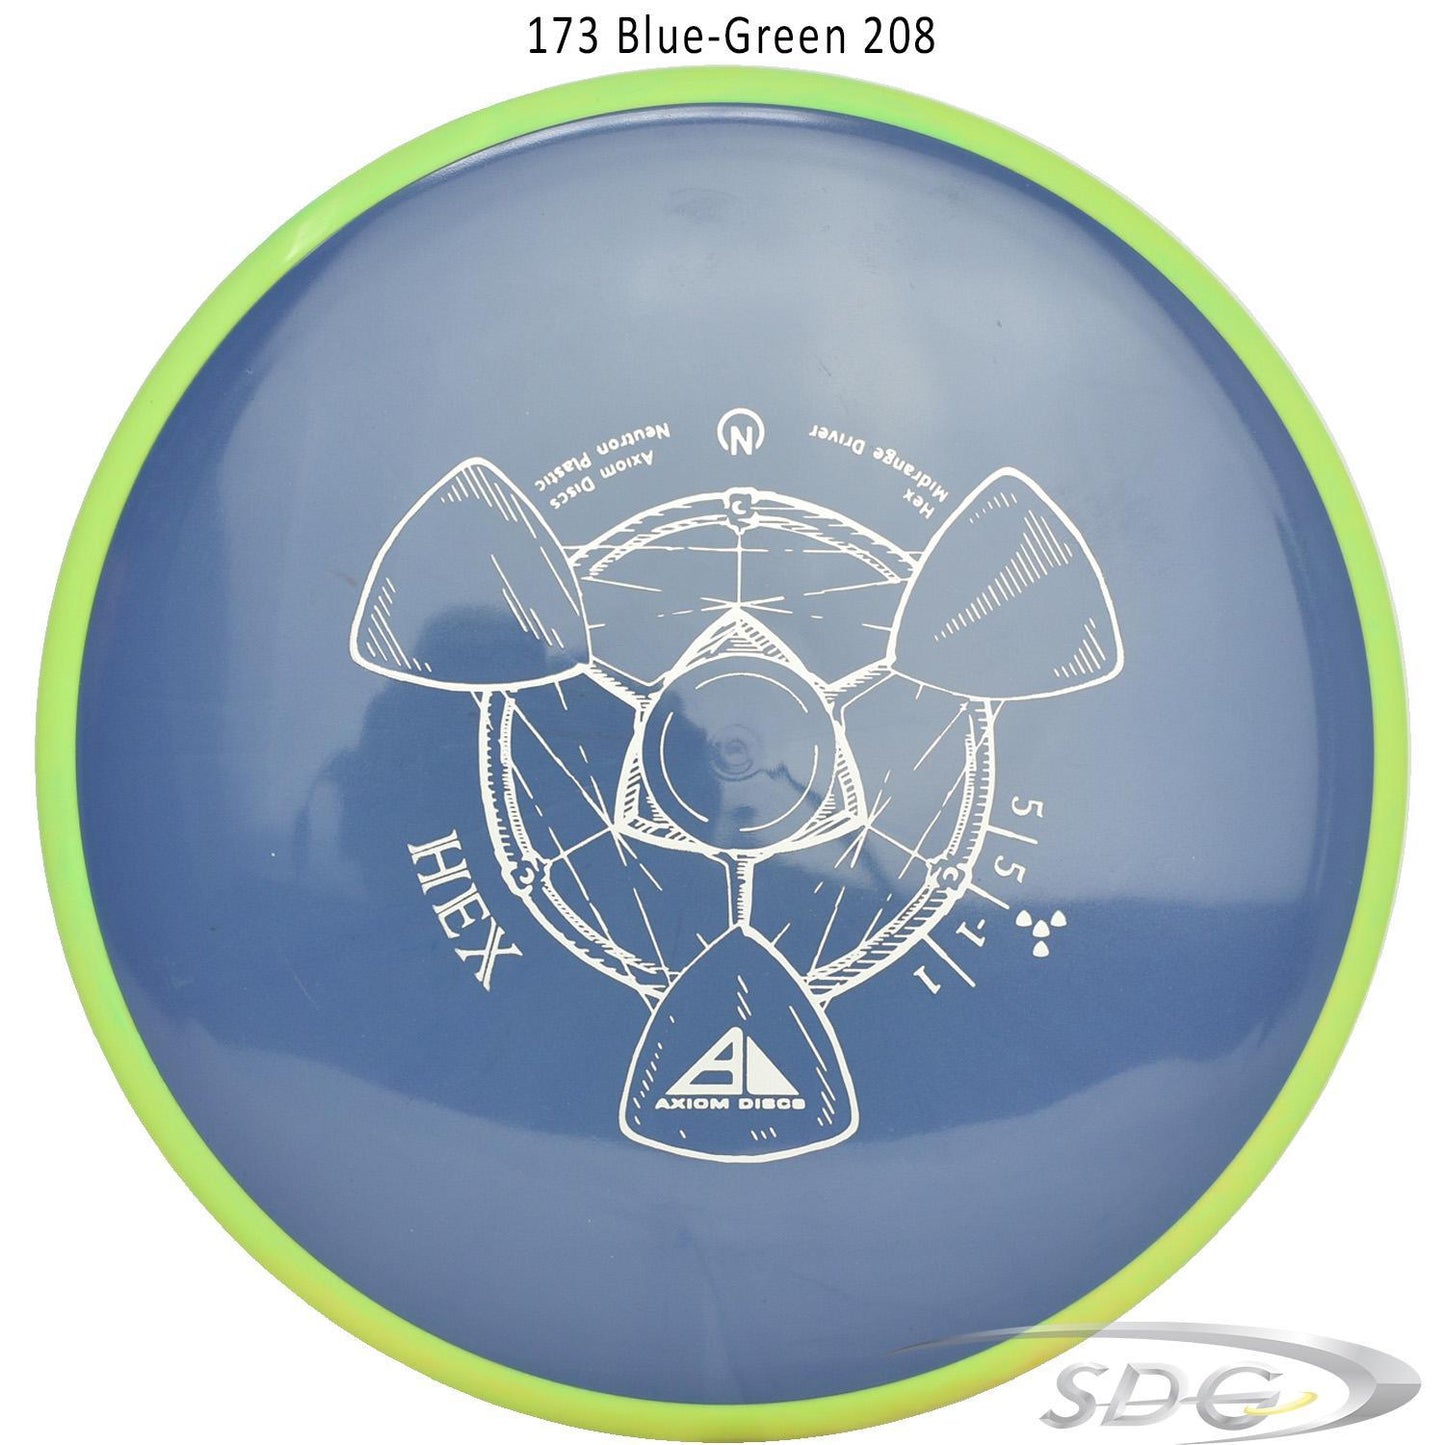 axiom-neutron-hex-disc-golf-midrange 173 Blue-Green 208